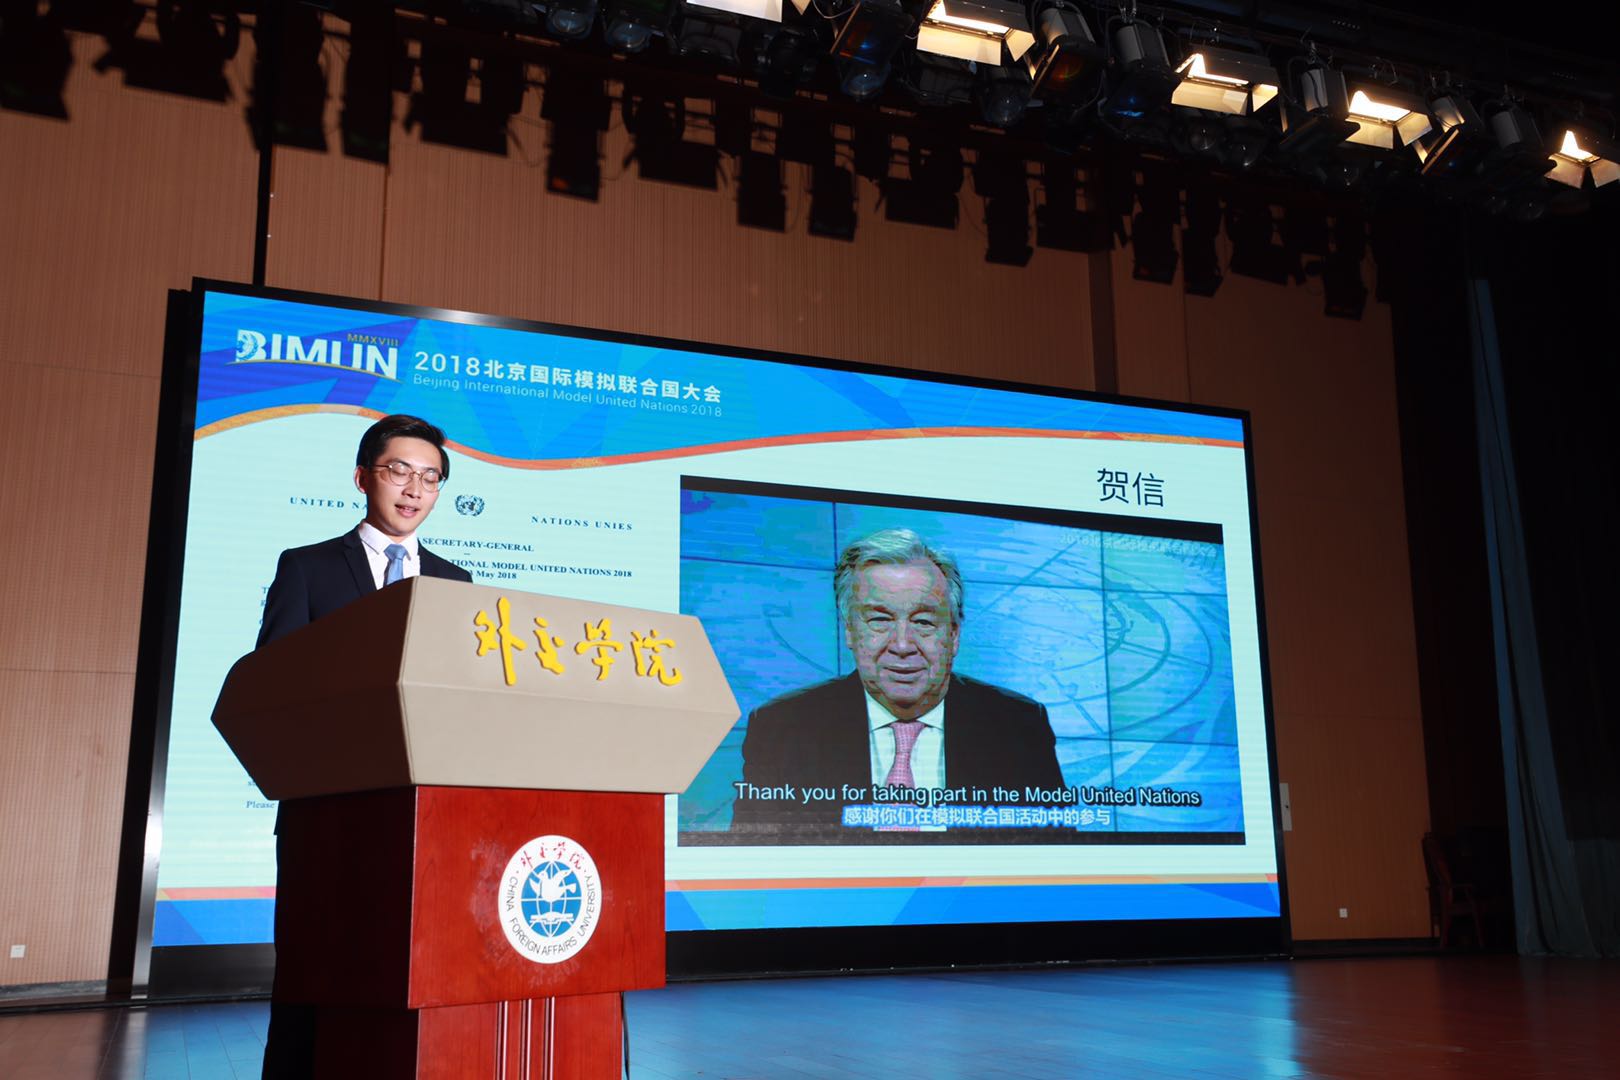 青年责任·共同命运,2018北京国际模拟联合国大会在京开幕